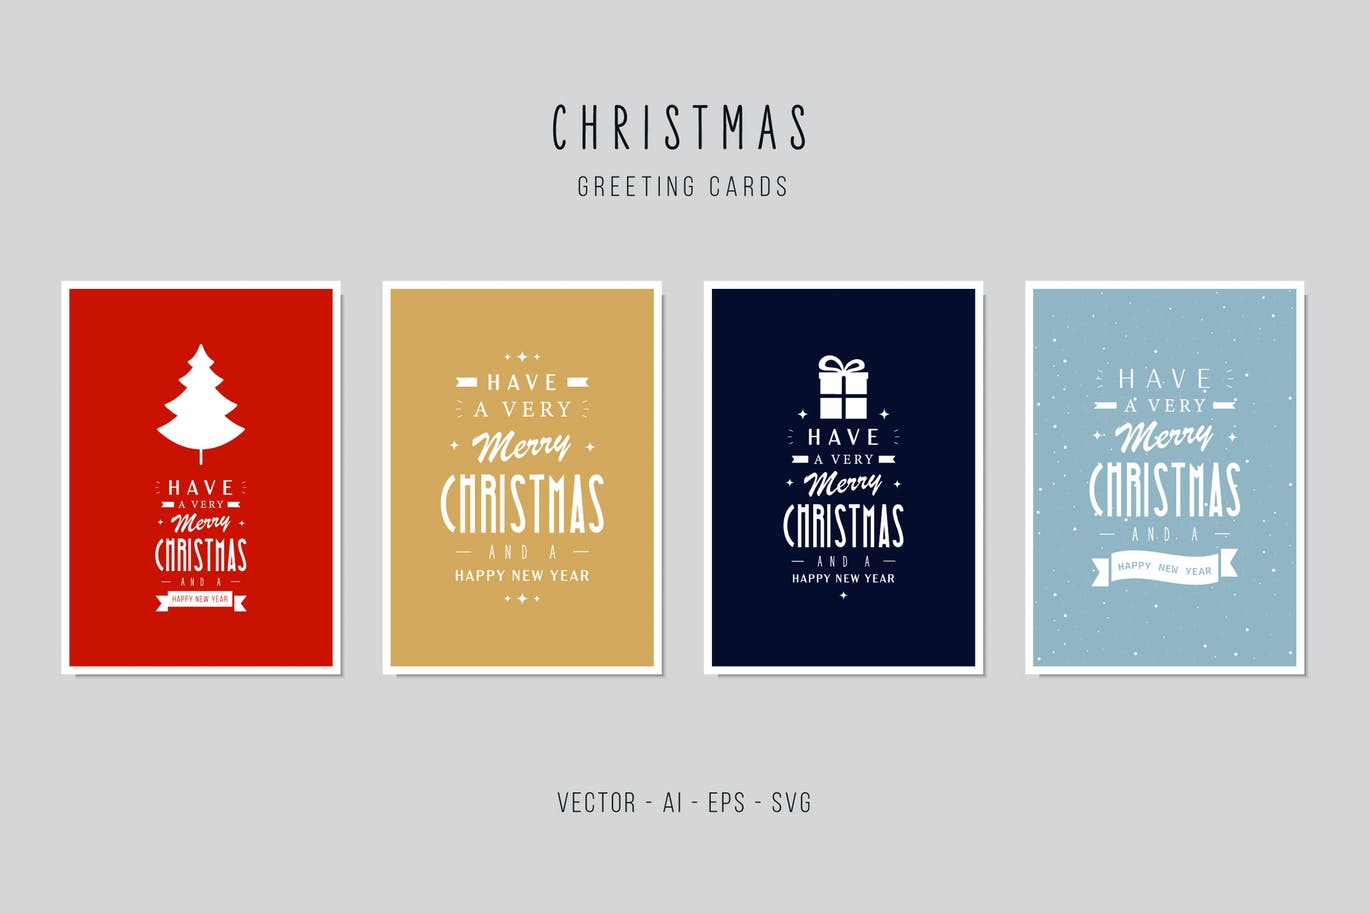 图形文字徽标风格圣诞节贺卡设计模板 Christmas Greeting Vector Card Set插图